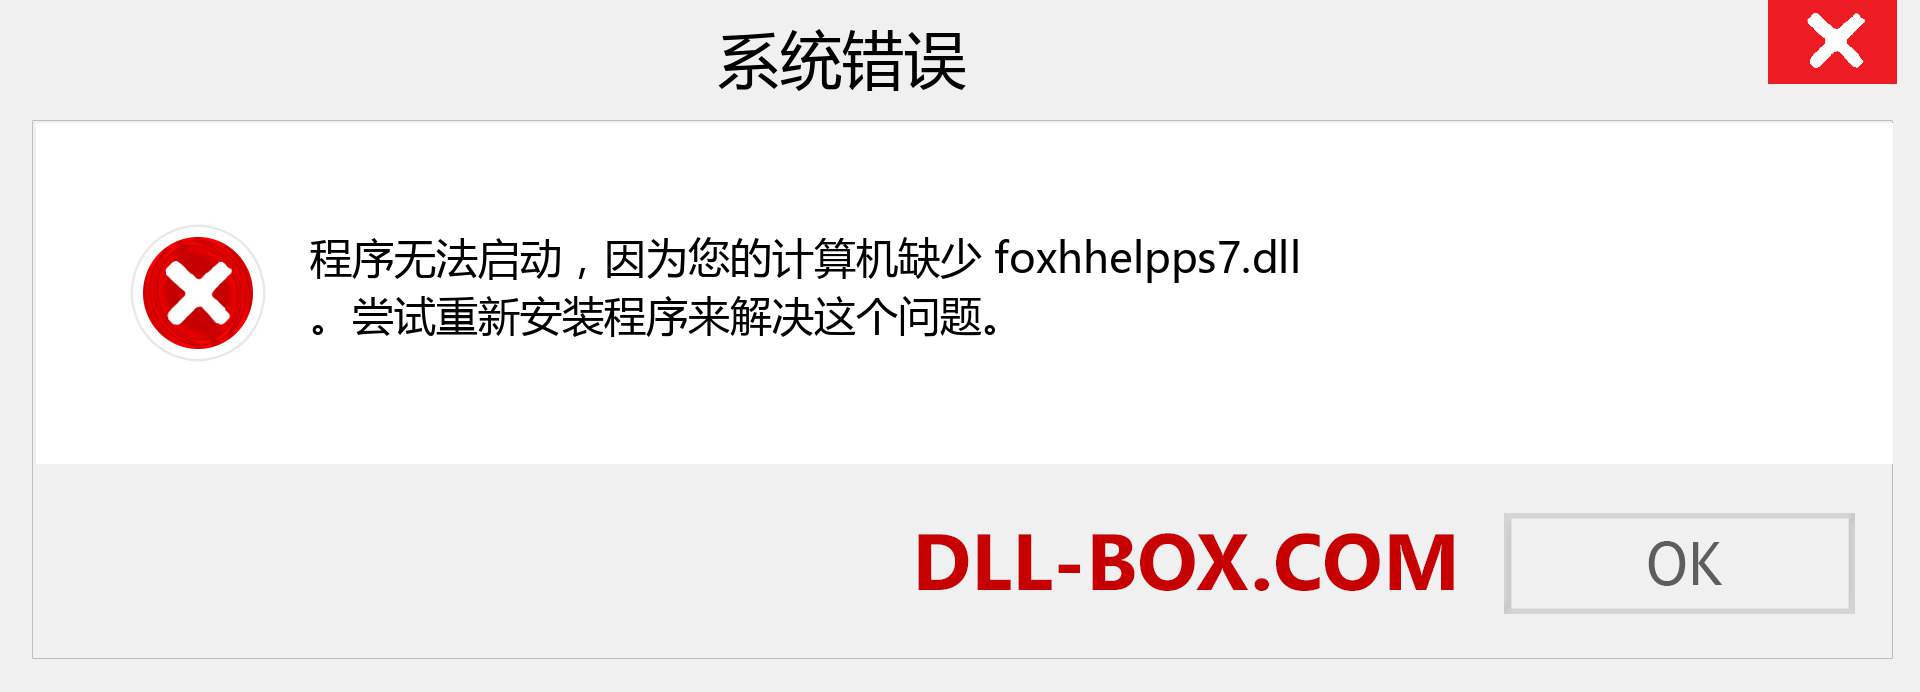 foxhhelpps7.dll 文件丢失？。 适用于 Windows 7、8、10 的下载 - 修复 Windows、照片、图像上的 foxhhelpps7 dll 丢失错误